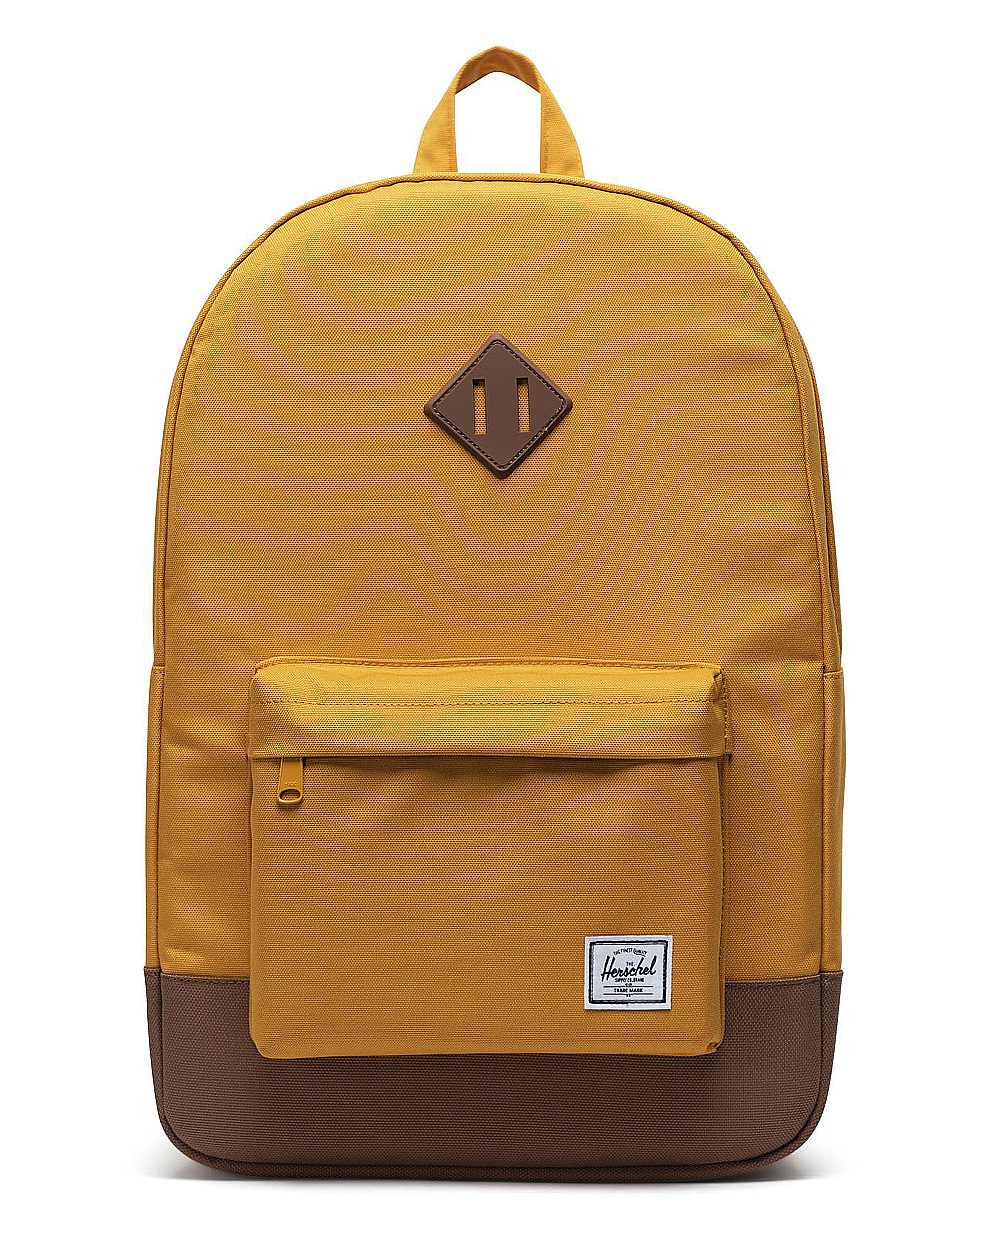 Рюкзак водоотталкивающий с карманом для 15 ноутбука Herschel Heritage Harvest Gold отзывы